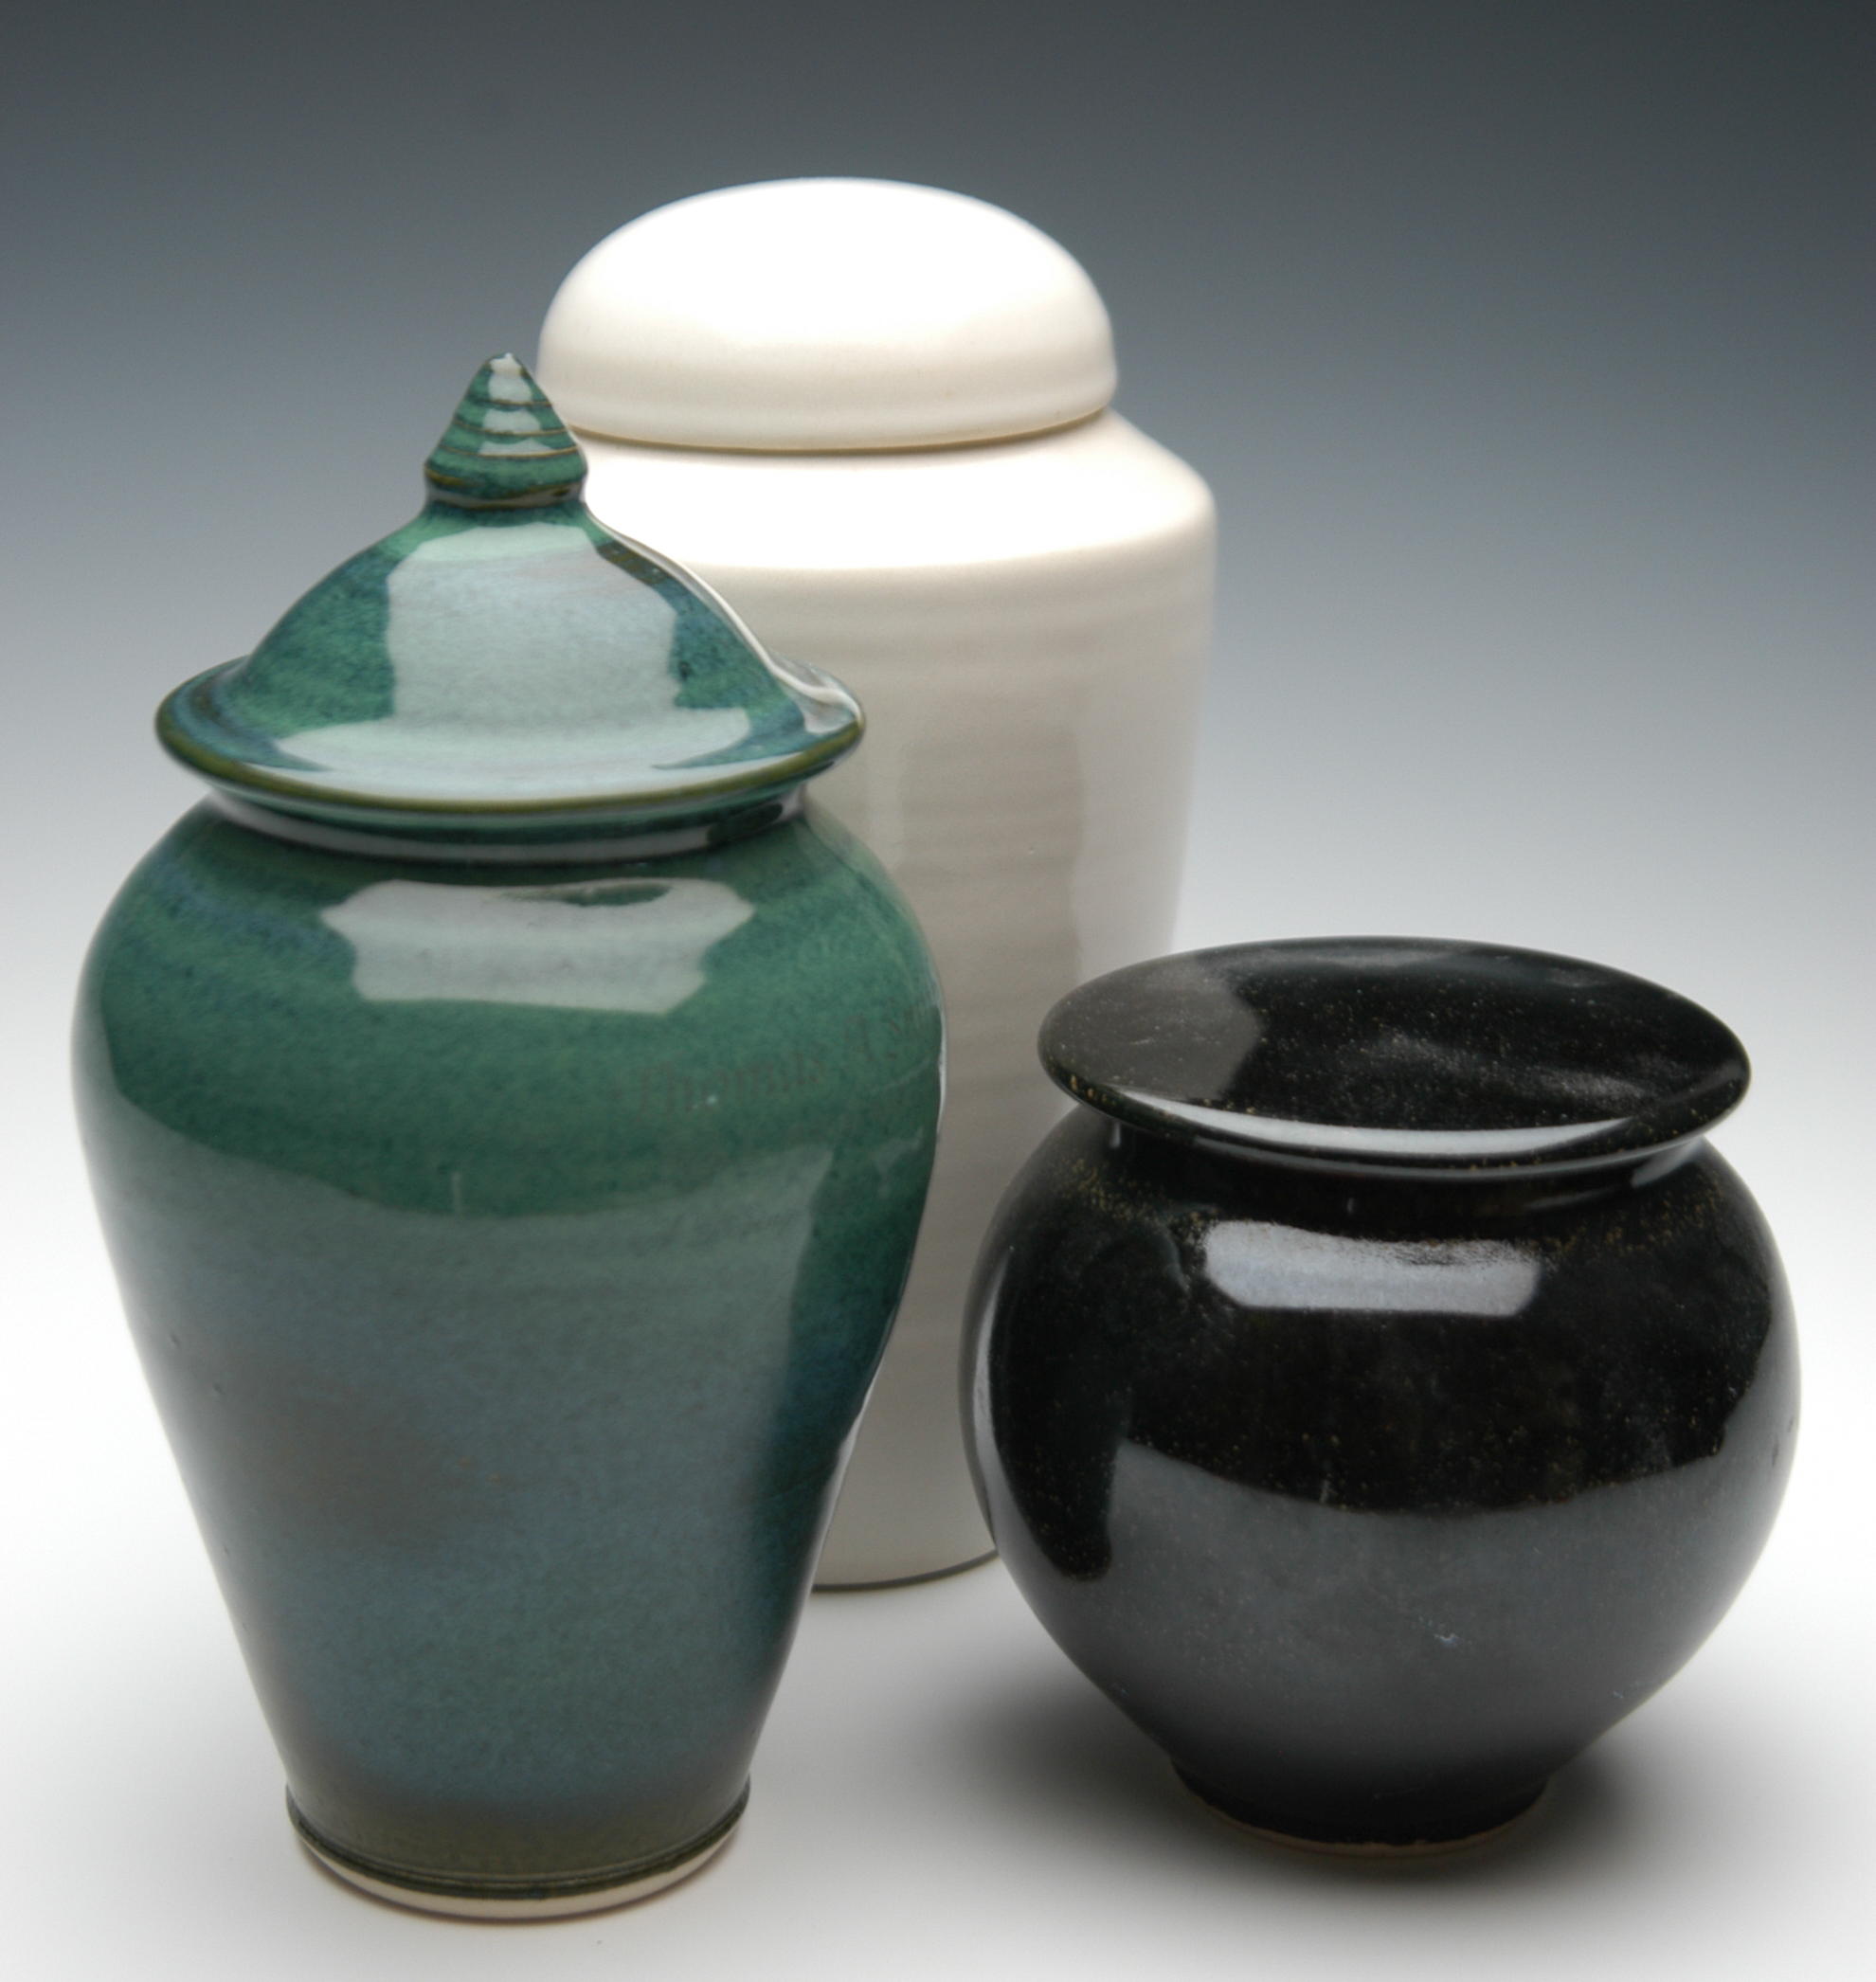 Plain ceramic urns